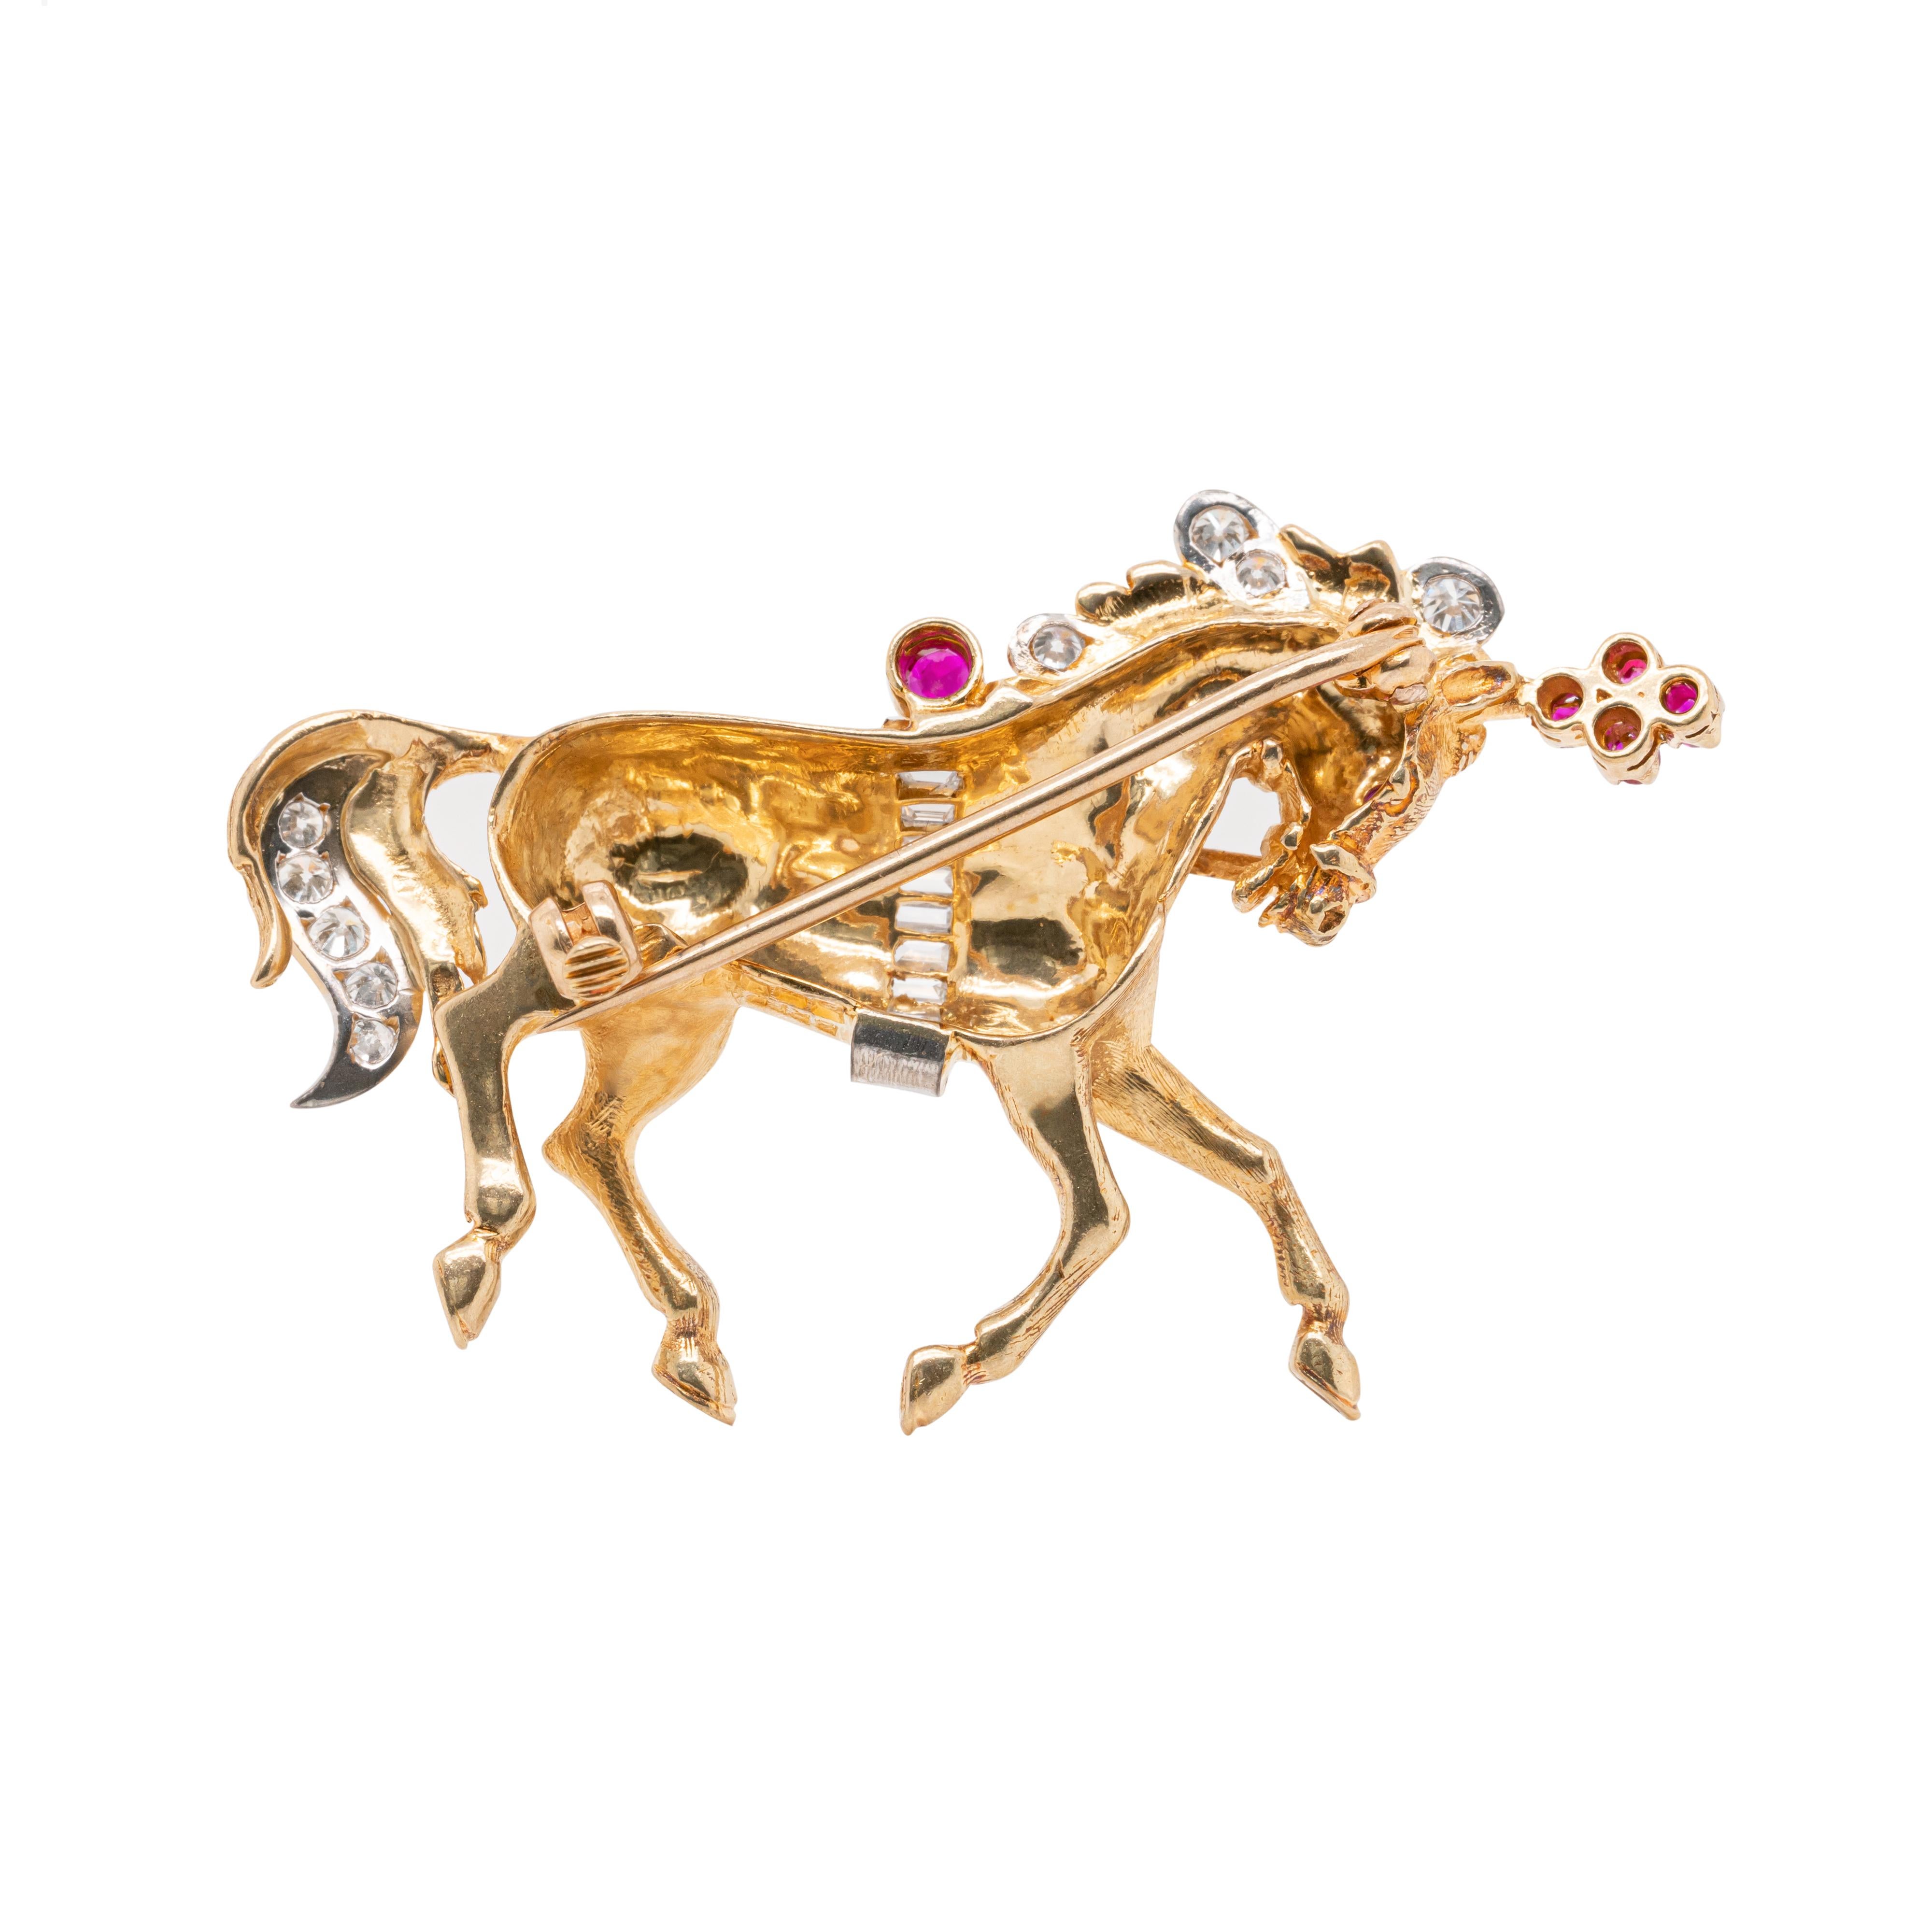 Cette magnifique broche en forme de cheval, conçue par le joaillier britannique Ben Rosenfeld, est réalisée en or jaune 18 carats. La pièce est sertie de 6 rubis, d'un poids approximatif de 0,14 carats, et incrustée de 9 diamants taille baguette et